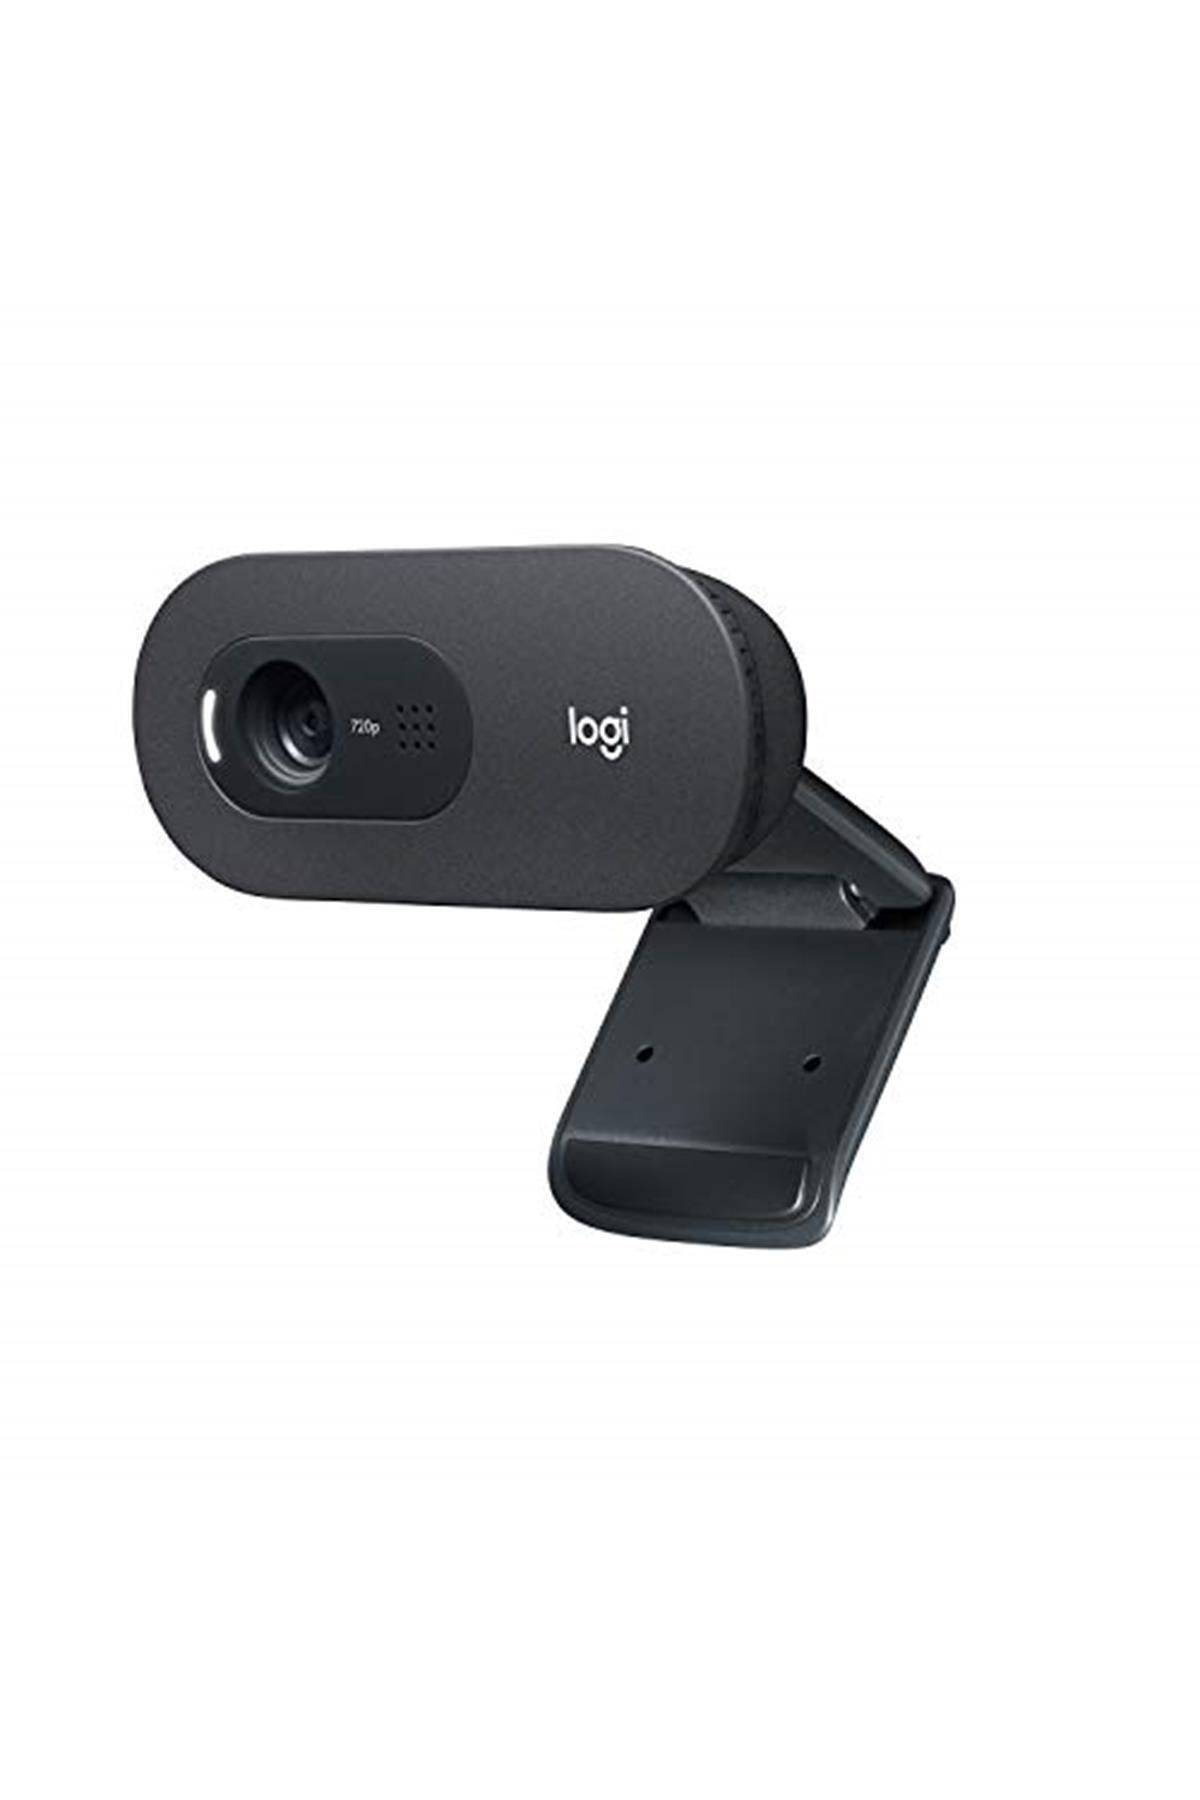 logitech C505 Hd Web Kamerası, 720p/30 Fps, Uzun Mesafeli Mikrofon, Otomatik Işık Düzeltme, Siyah